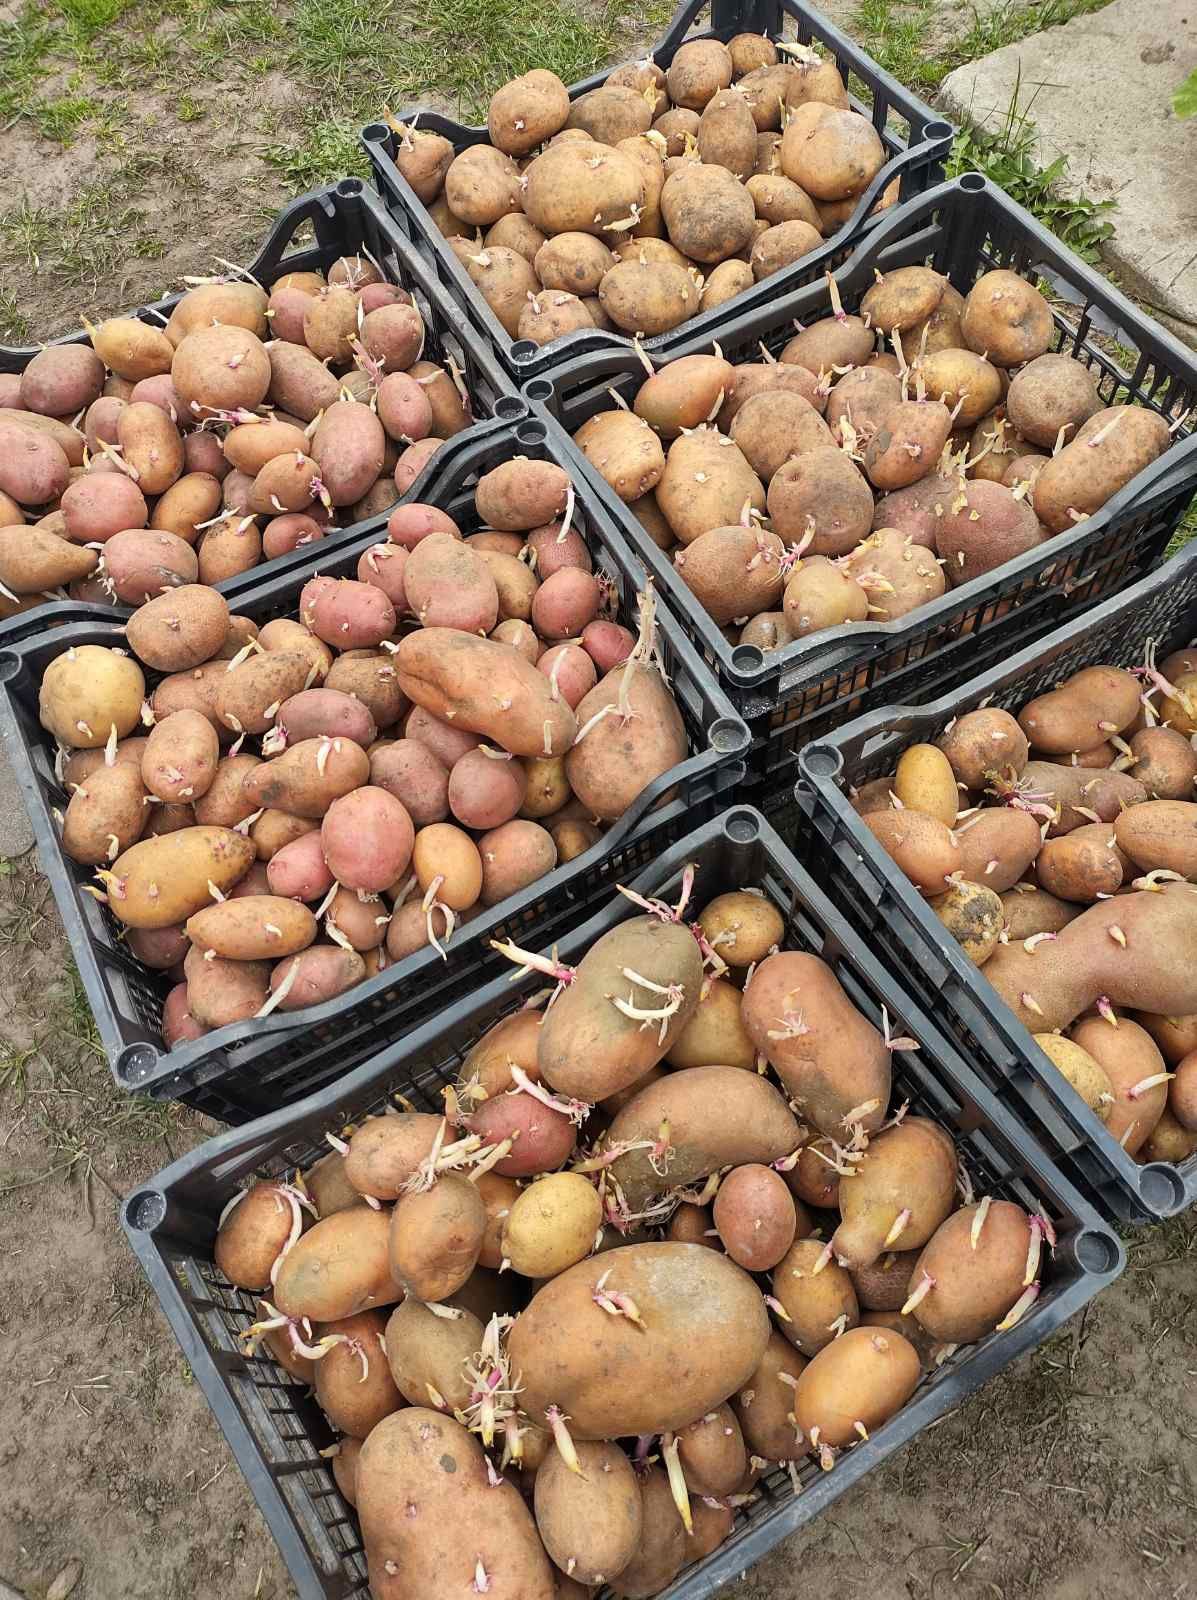 Посадкова картопля на посадку Слов'янка та інші сорти мікс